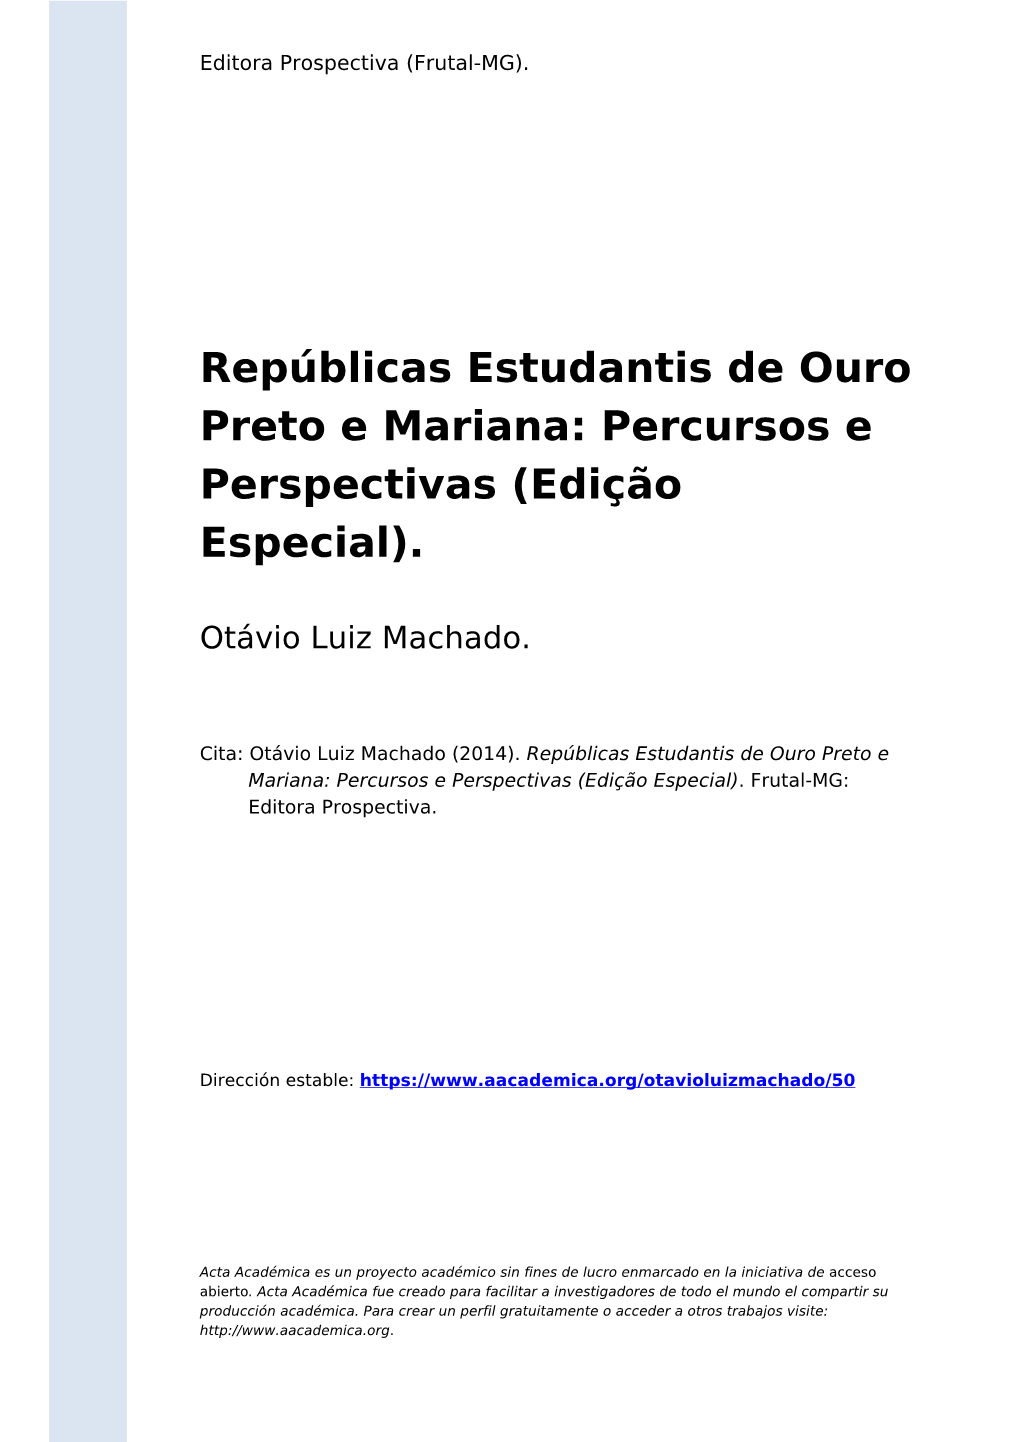 Repúblicas Estudantis De Ouro Preto E Mariana: Percursos E Perspectivas (Edição Especial)